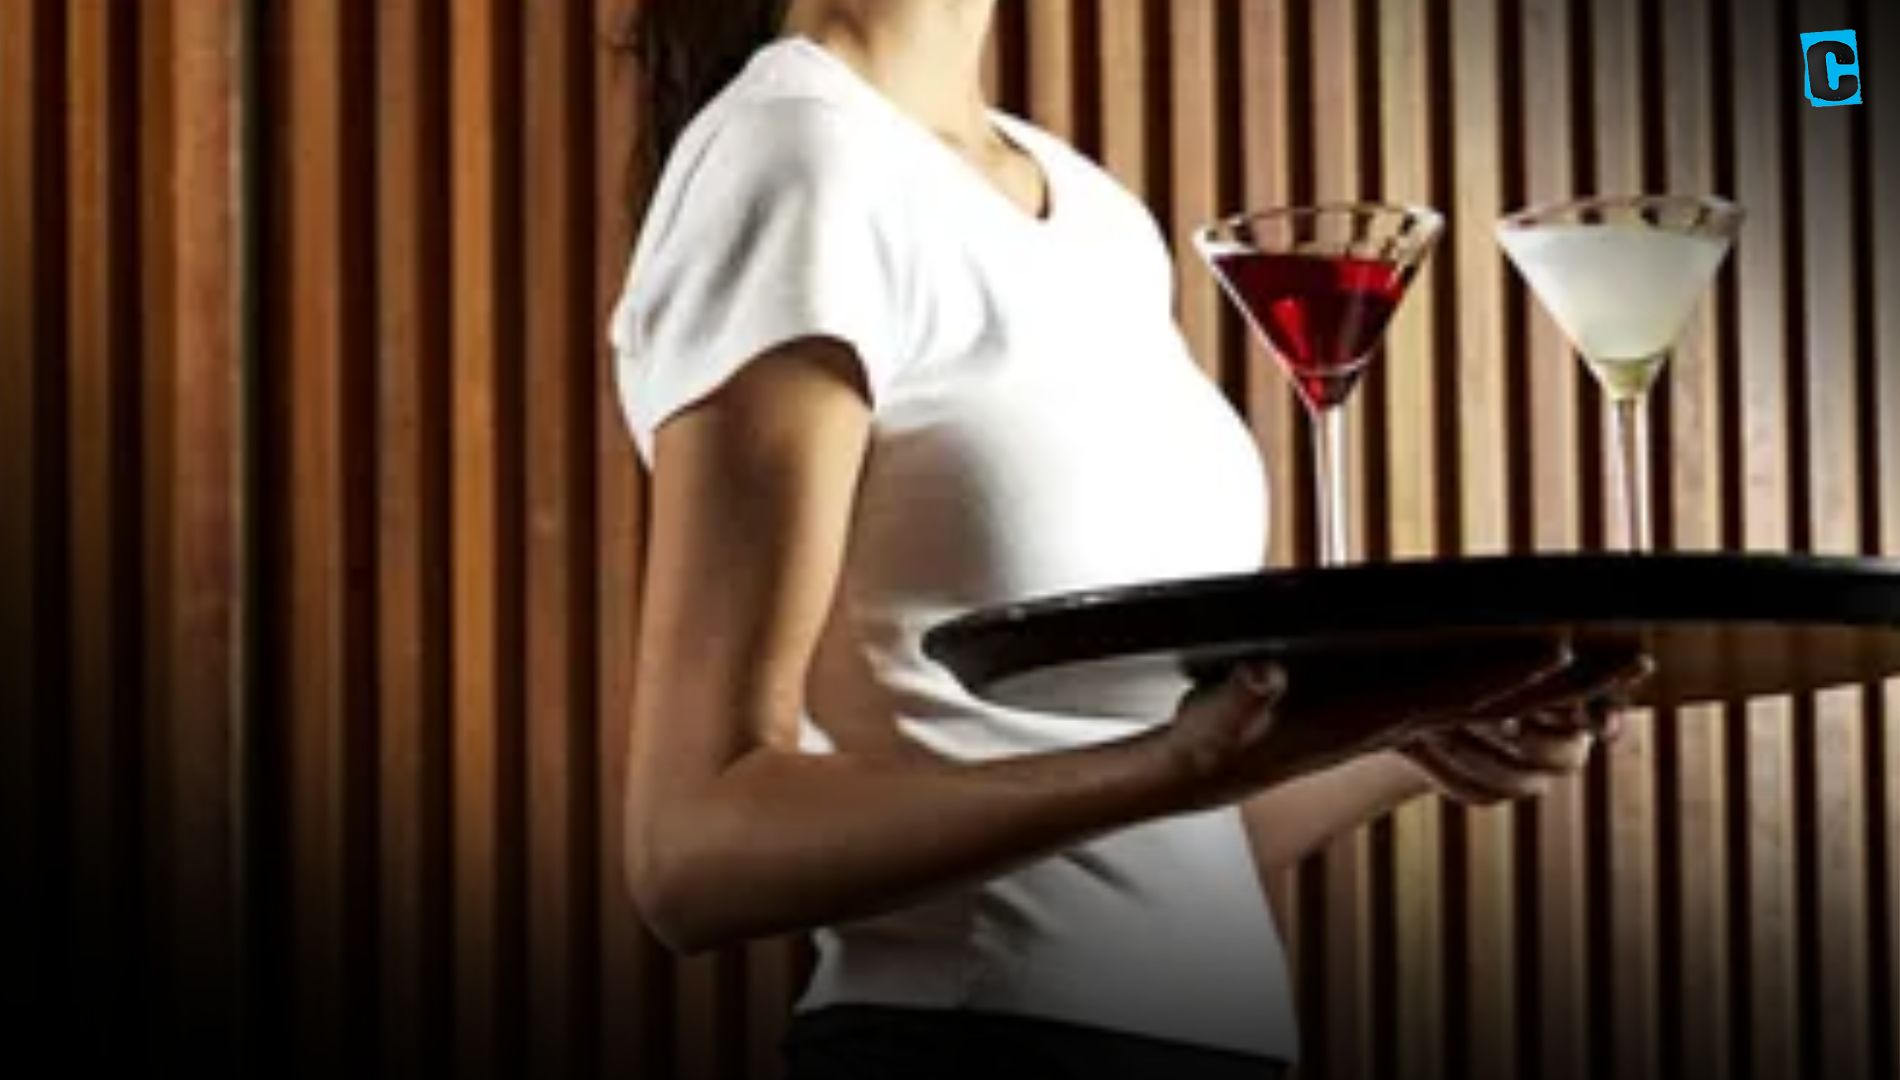 Una empresa tendrá que readmitir e indemnizar a una camarera que se negó a trabajar en sujetador y bragas